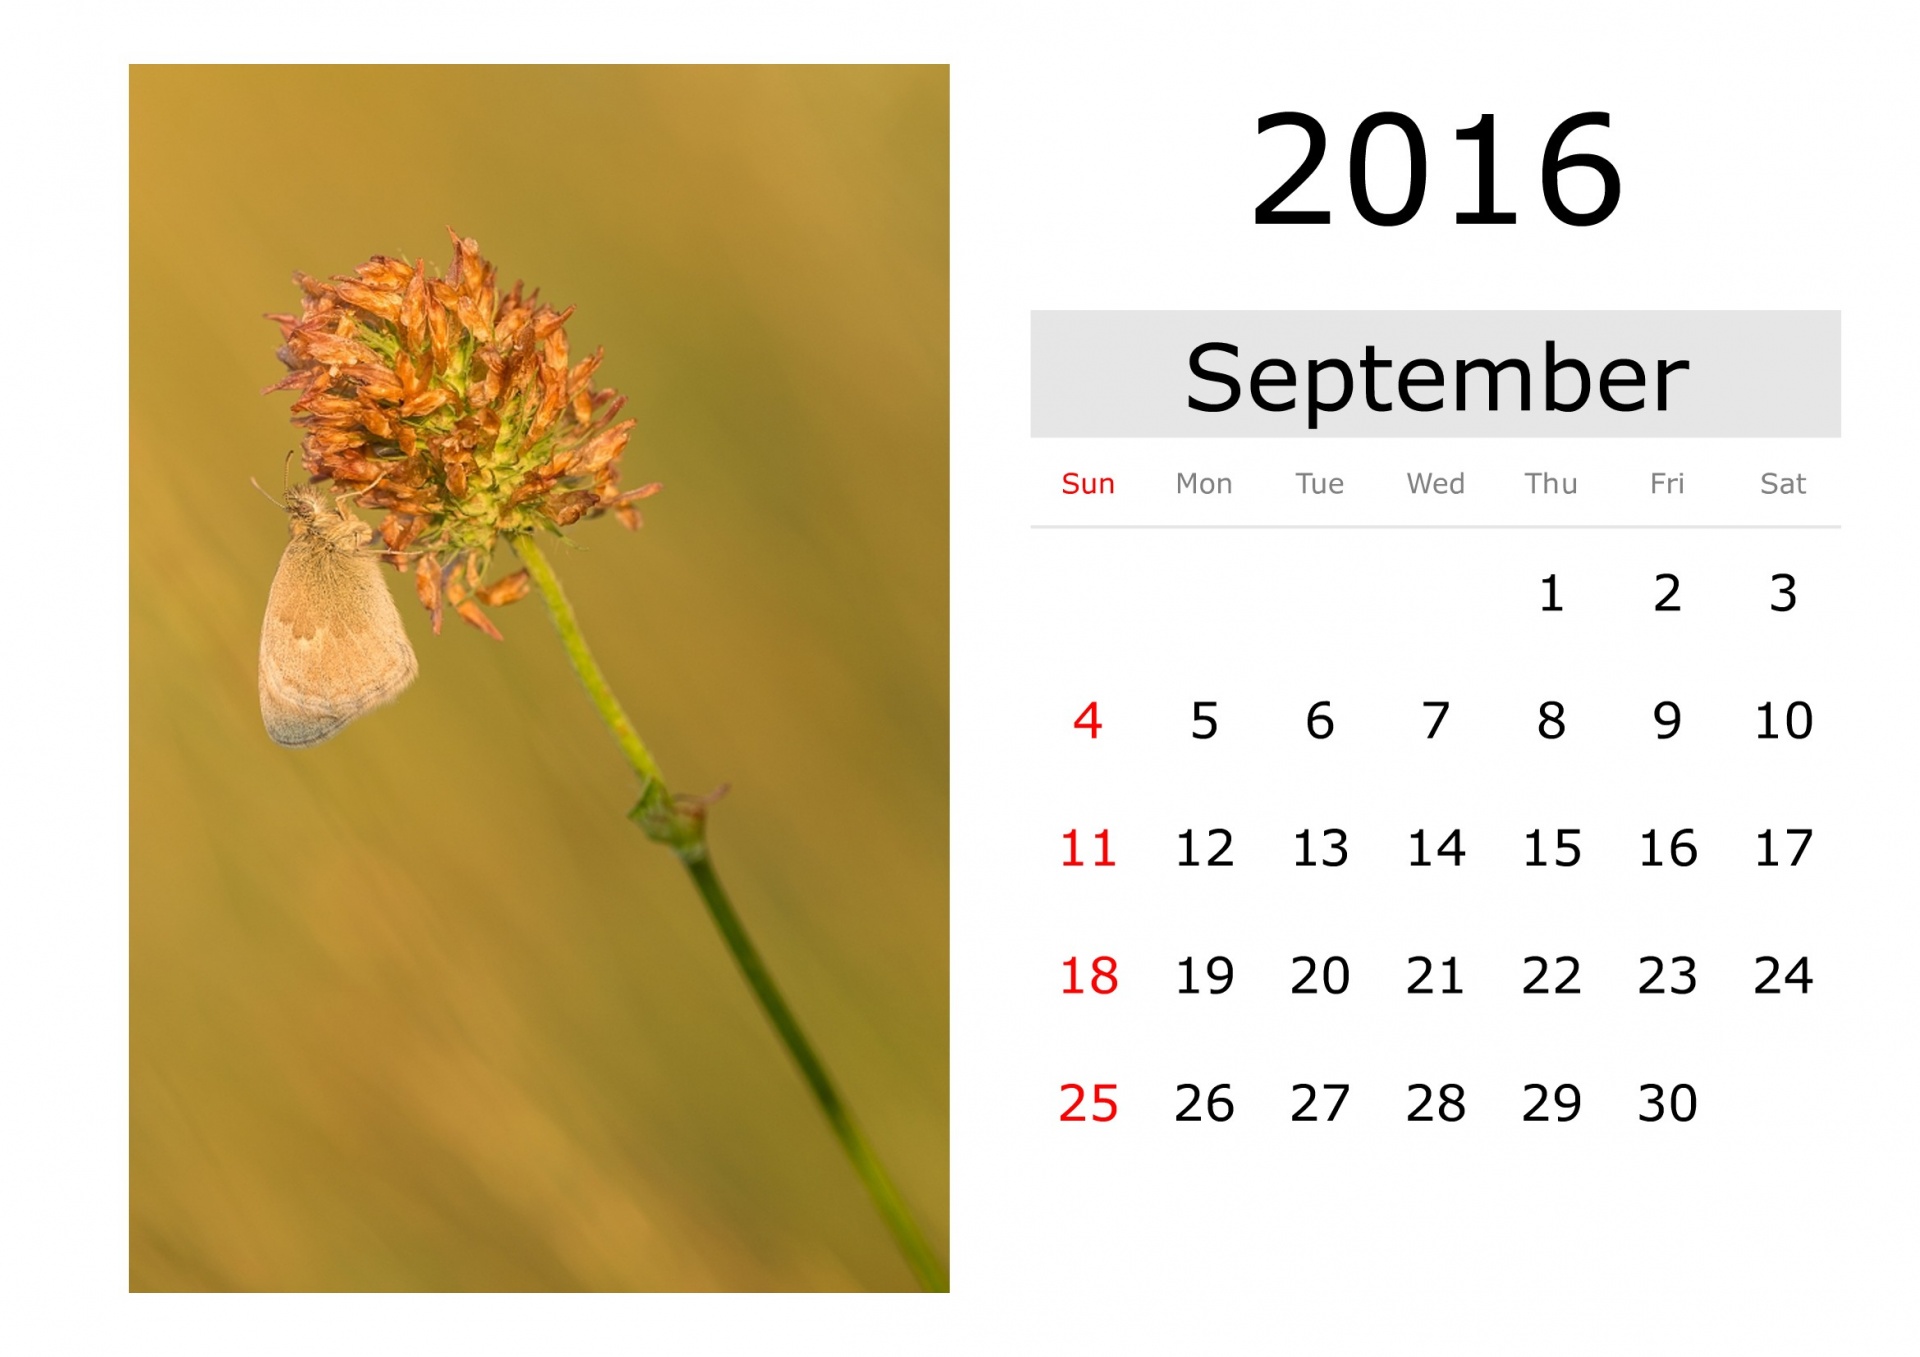 Календарь - сентябрь 2016 (на английском